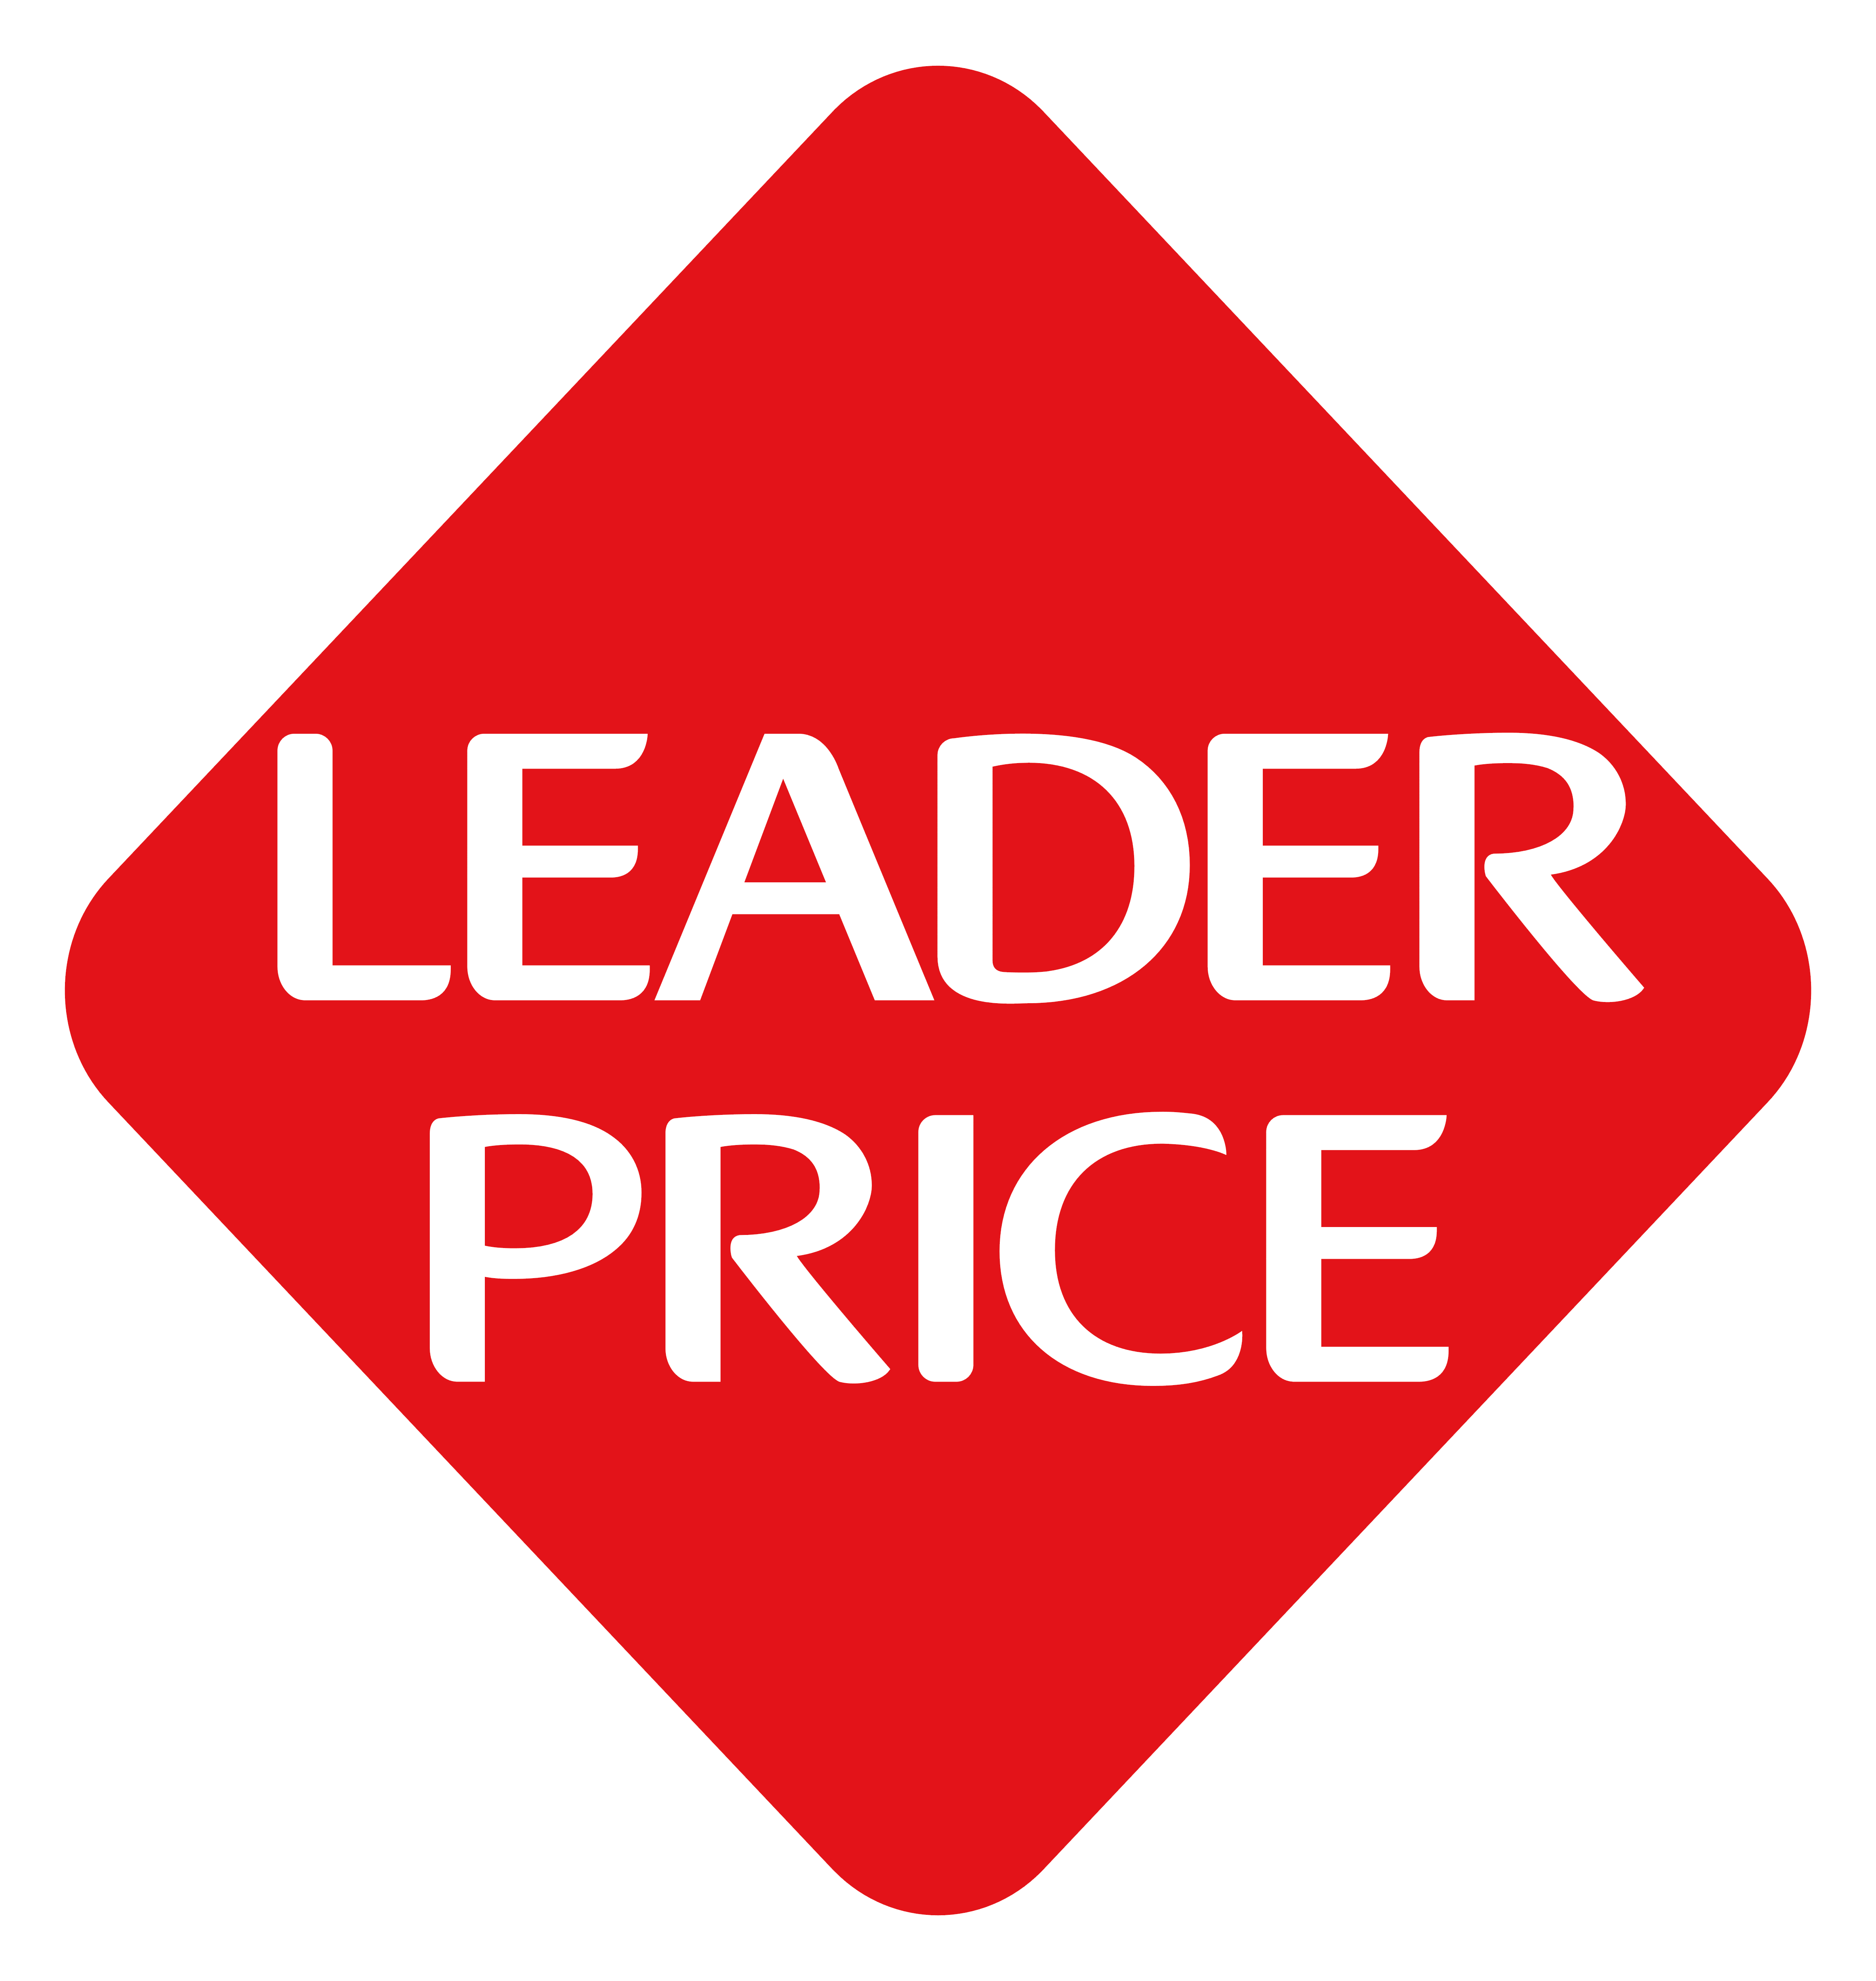 Leader Price – Logos Download